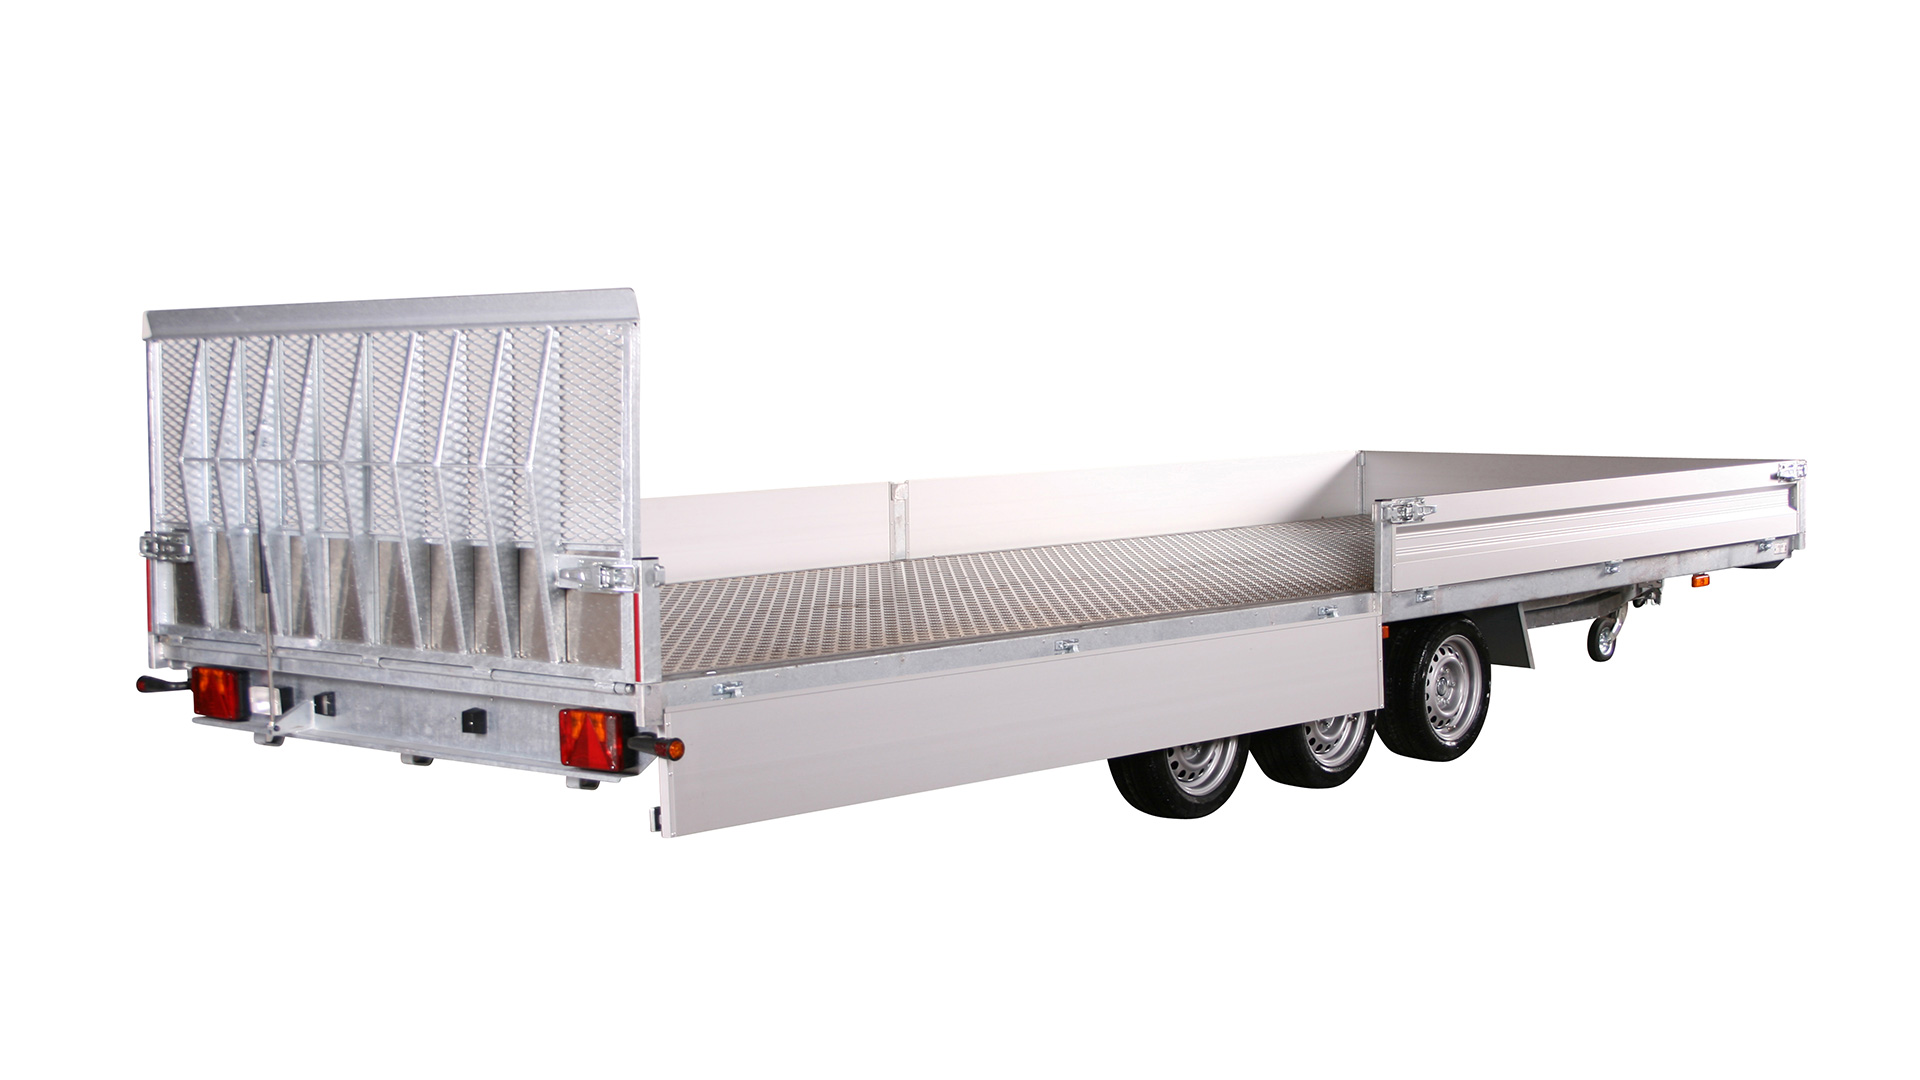 Variant PKW Anhänger Universaltransporter 3500 U6 - kippbar3500 kg, Ladefläche 6,20 x 2,10 m Tridem - mit Bordwänden